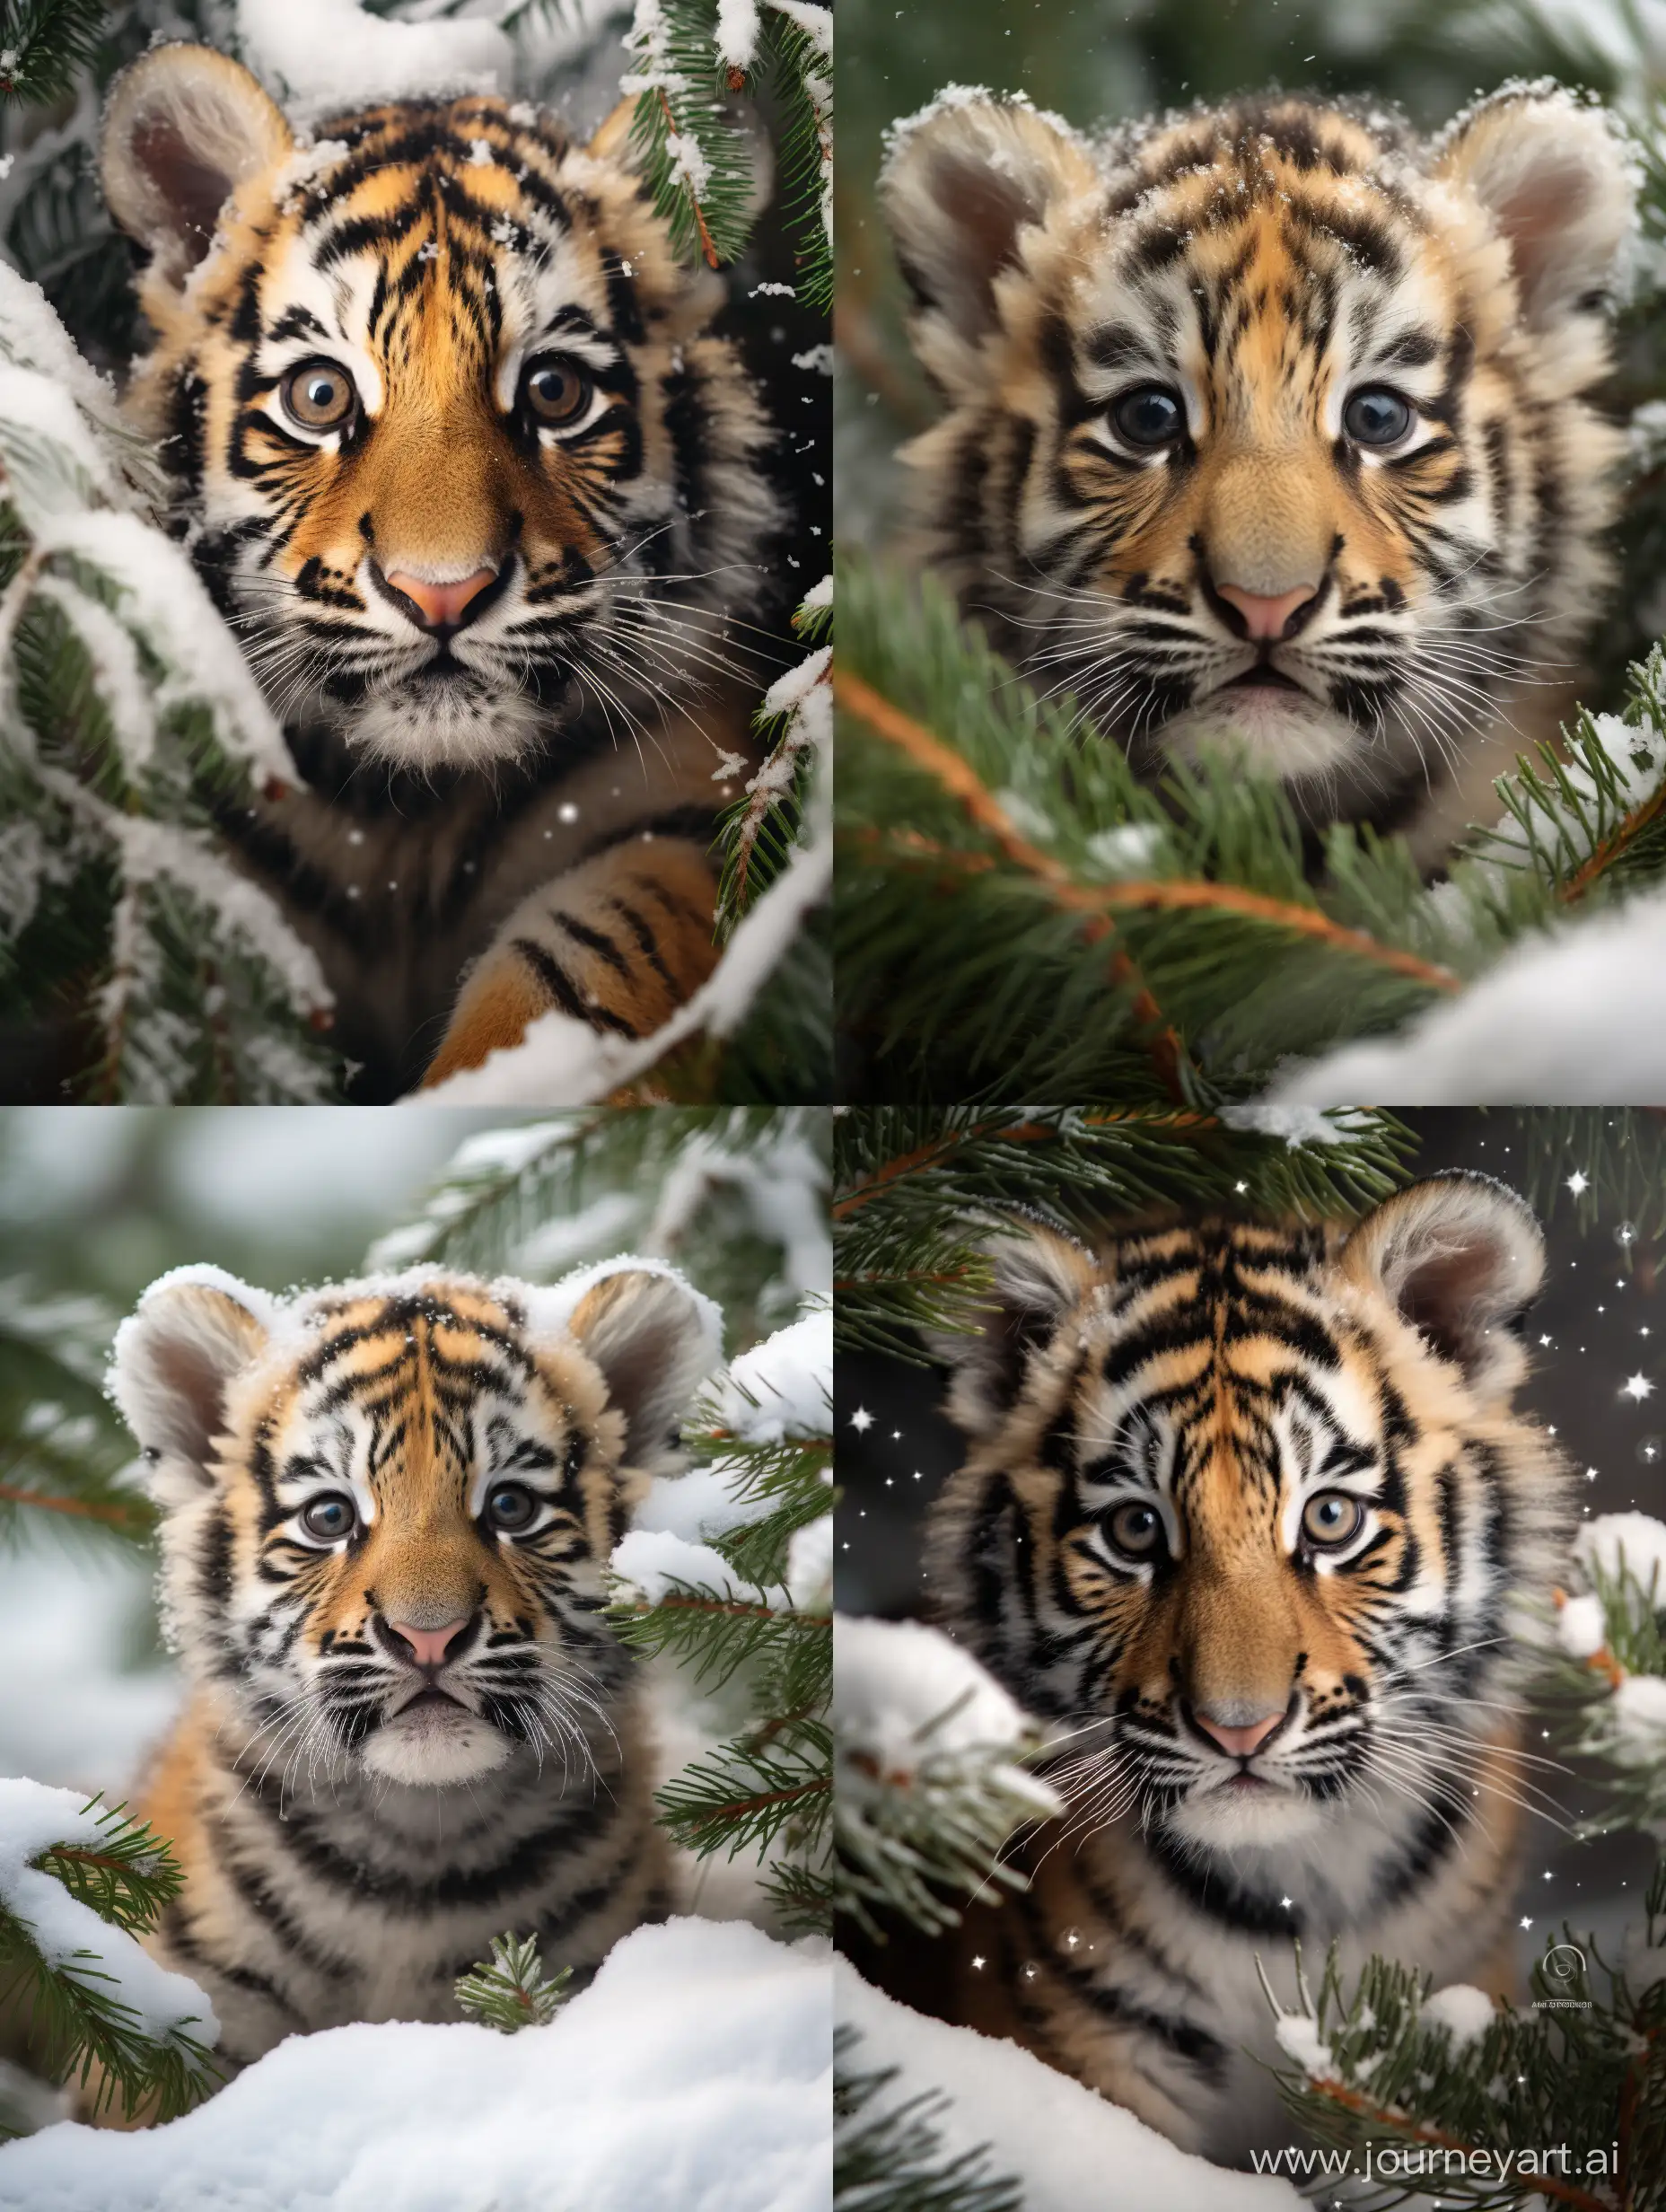 little tiger cub, professional photo, 15mm,f/2.8,1/500s, iso2000,bottom-up view, в снегу, под новогодней елью, праздничная атмосфера, высокая детализация, крупный план